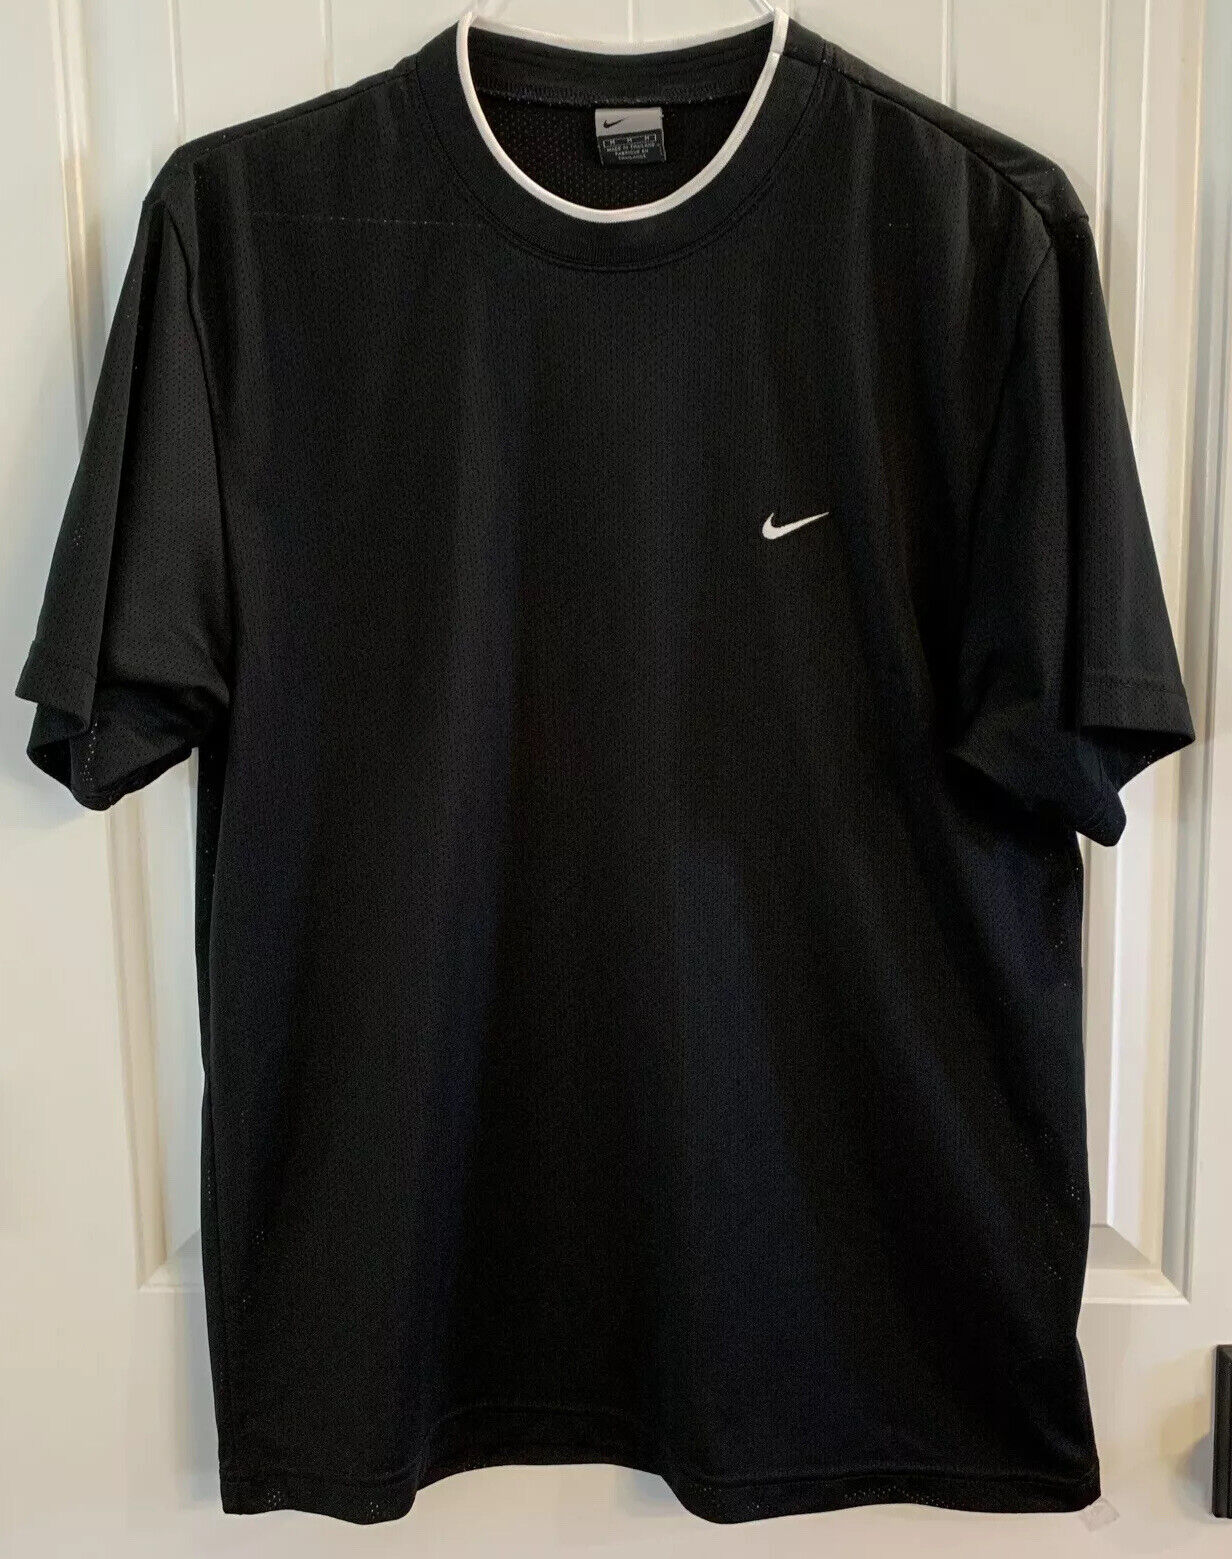 Ontbering Voorverkoop Balling Nike Black Athletic Jersey Shirt 100% Polyester Medium RN 56323 CA 05553 |  eBay